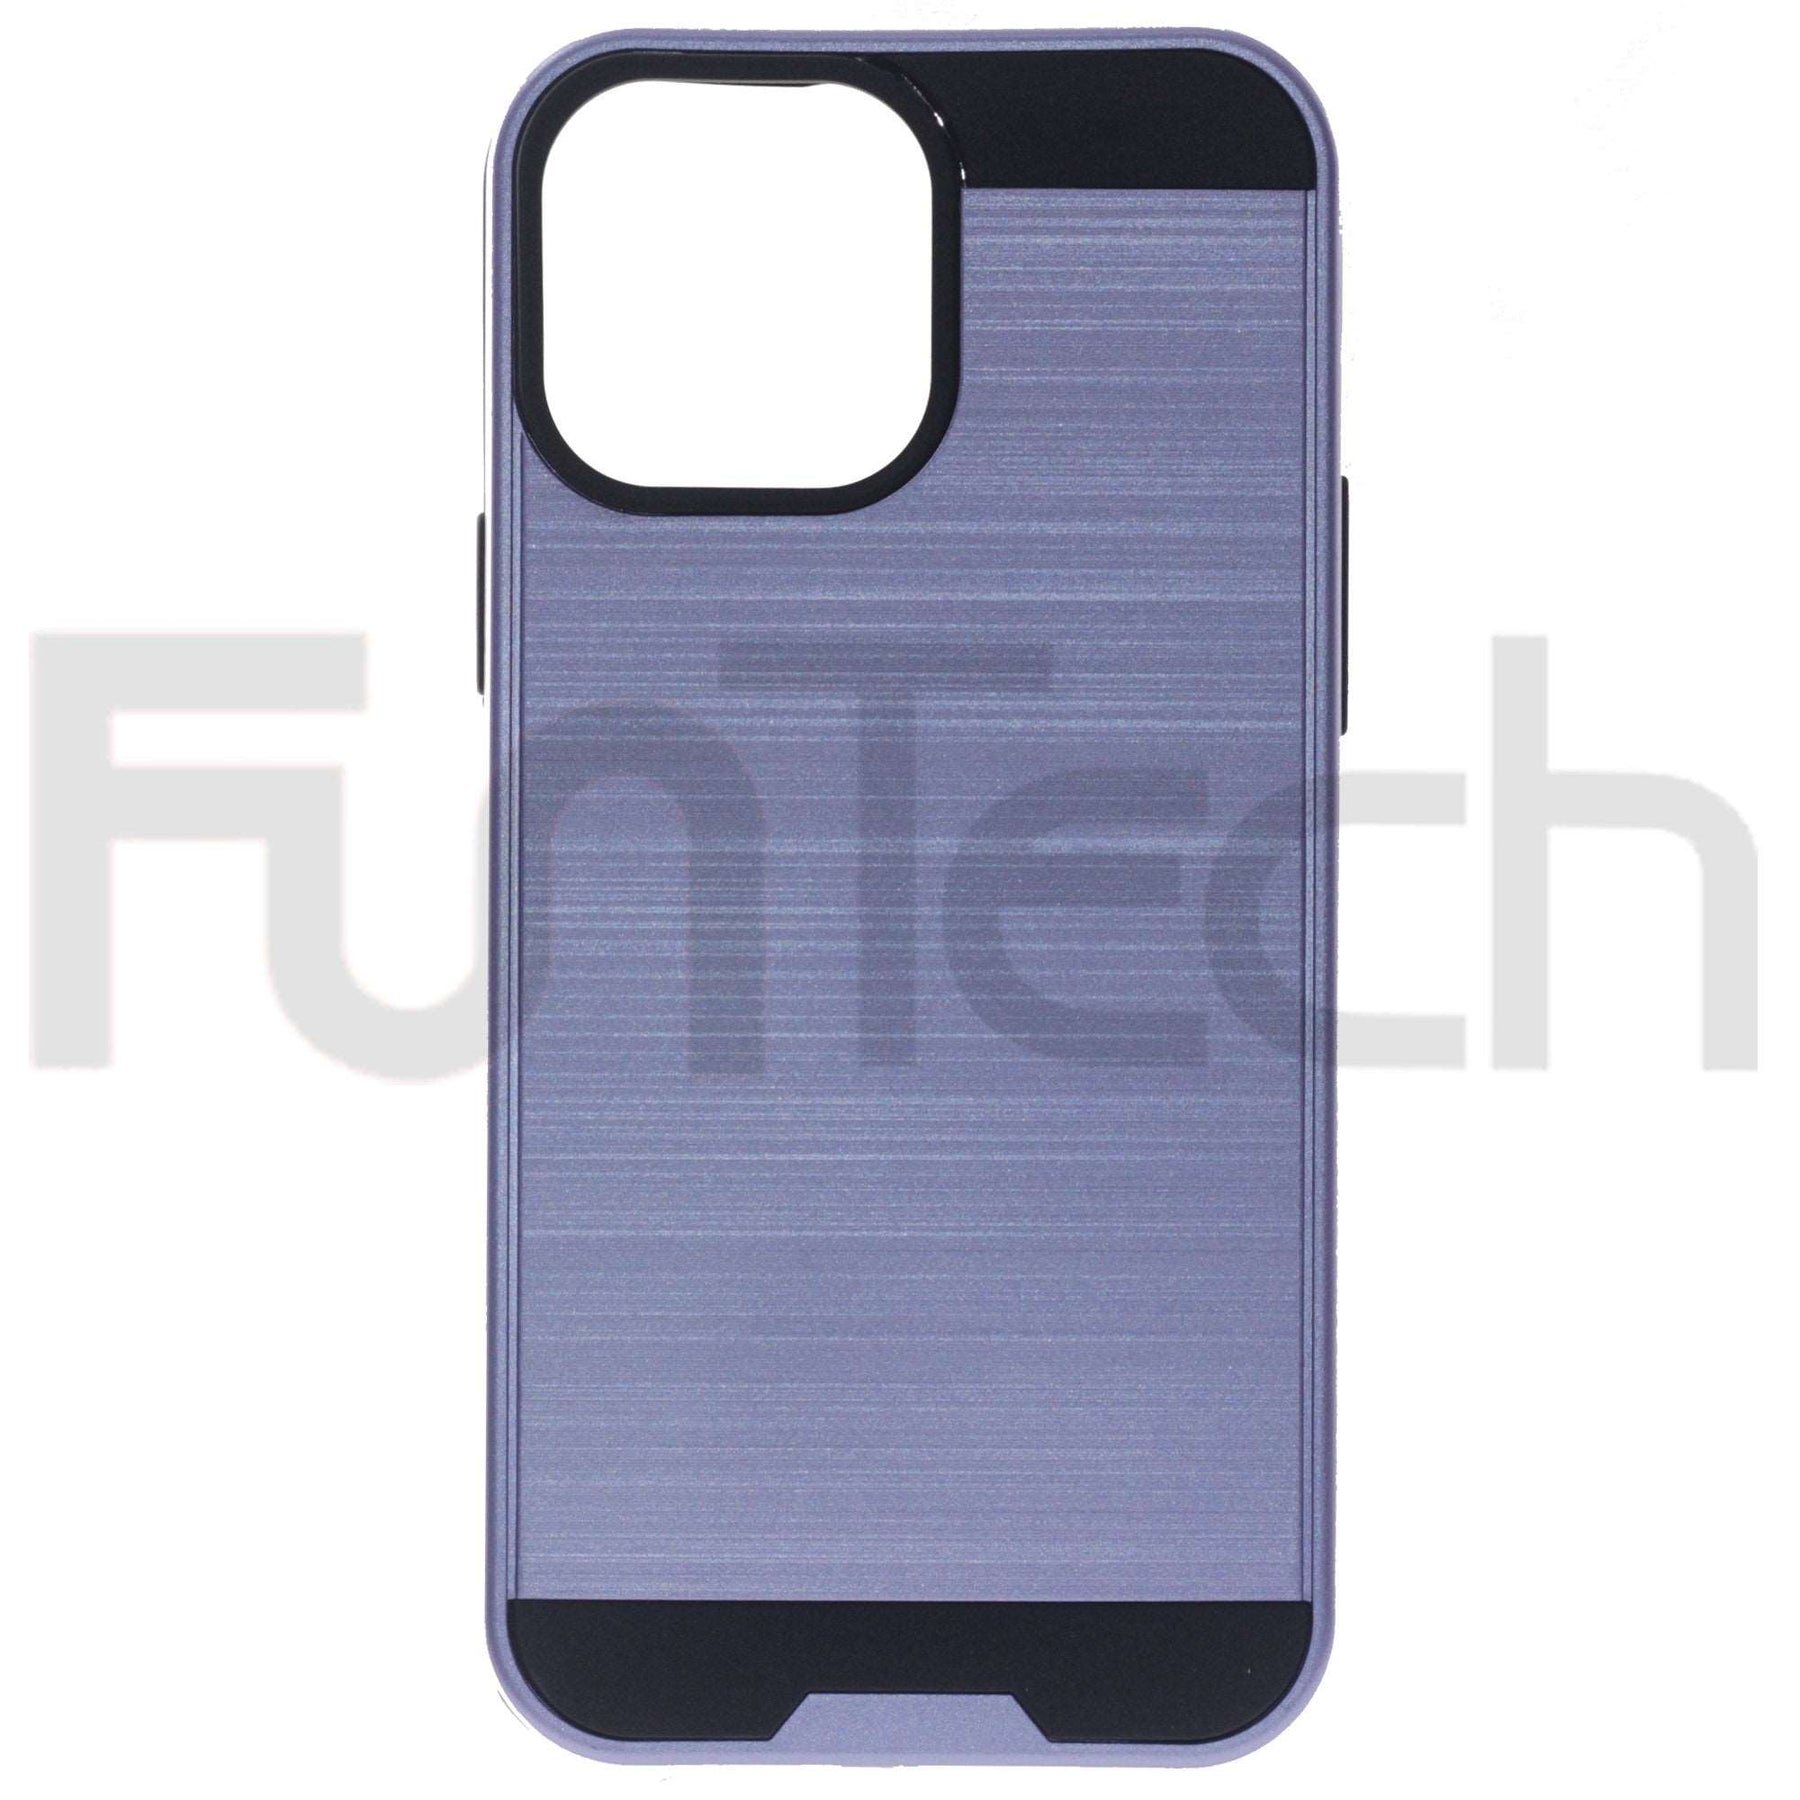 Apple iPhone 13 Pro, Slim Armor Case, Color Purple.